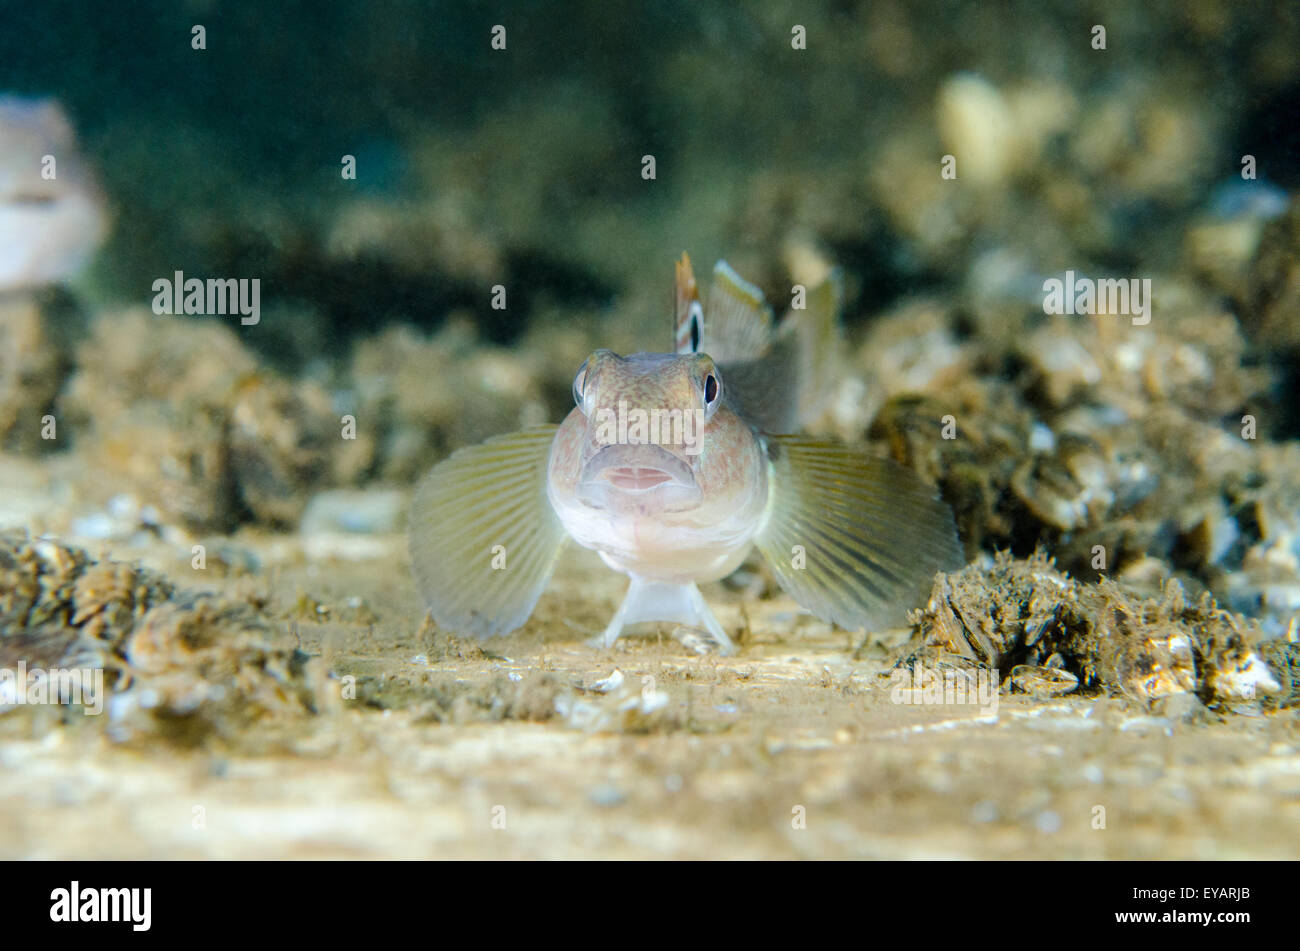 Round Gobi fish underwater Stock Photo